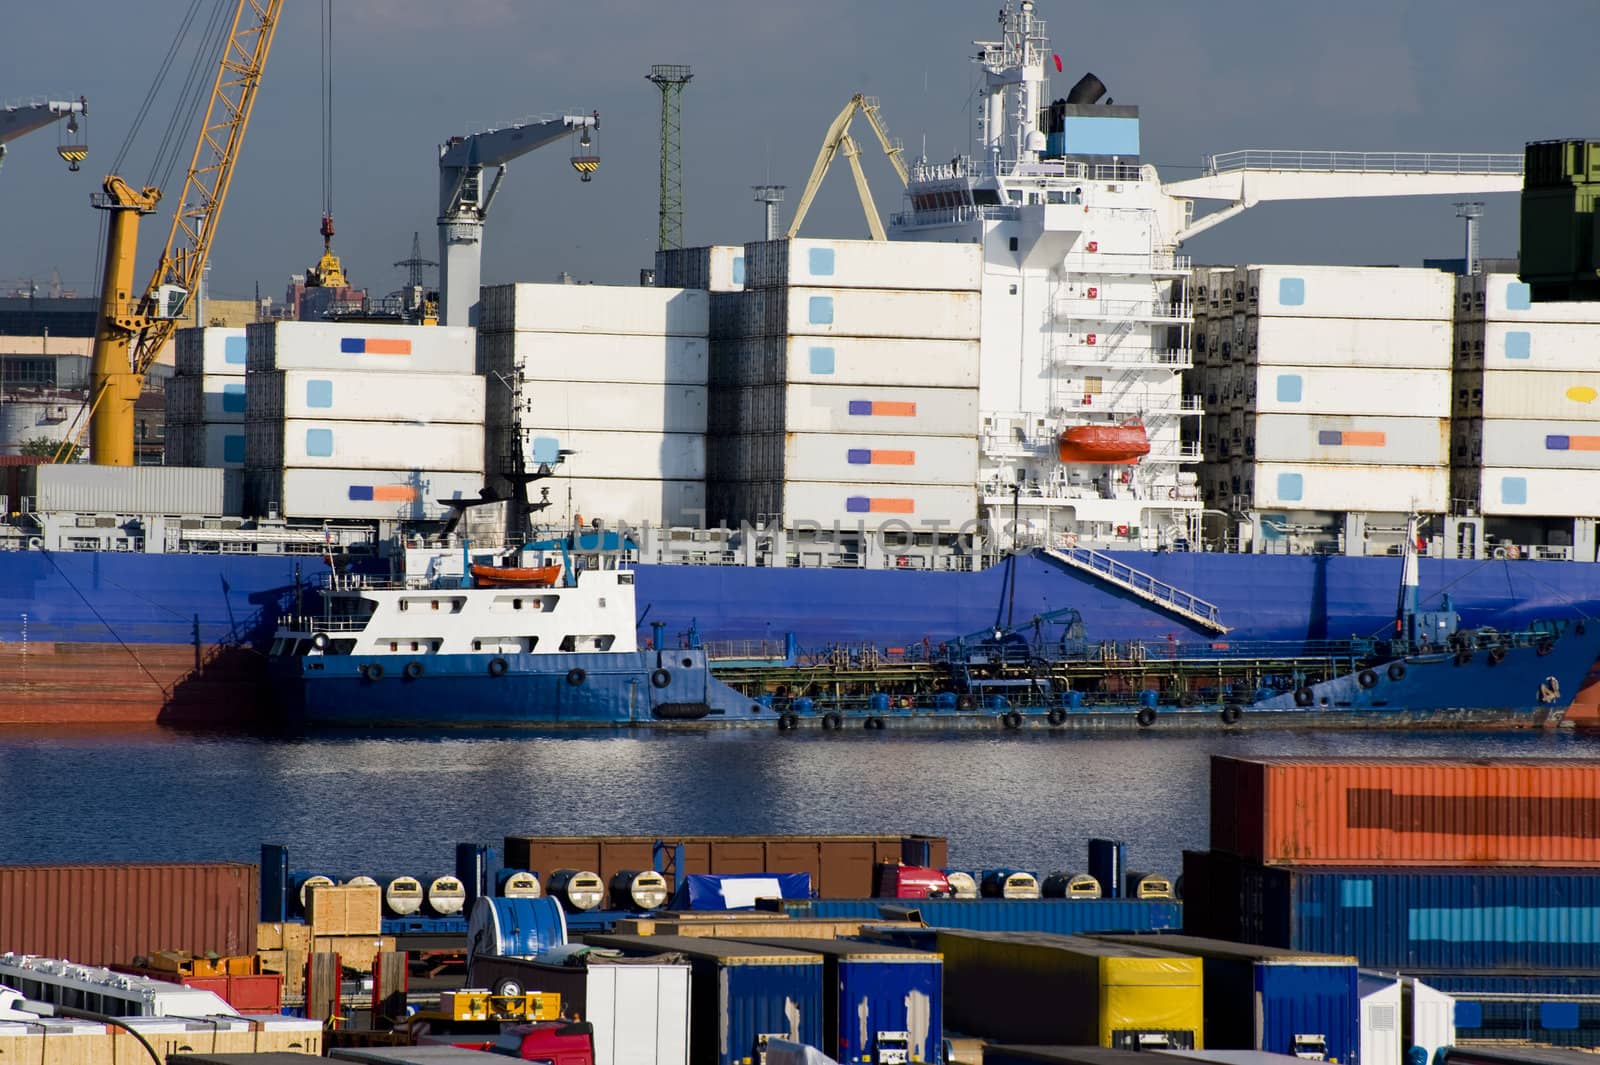 Cargo port by Alenmax